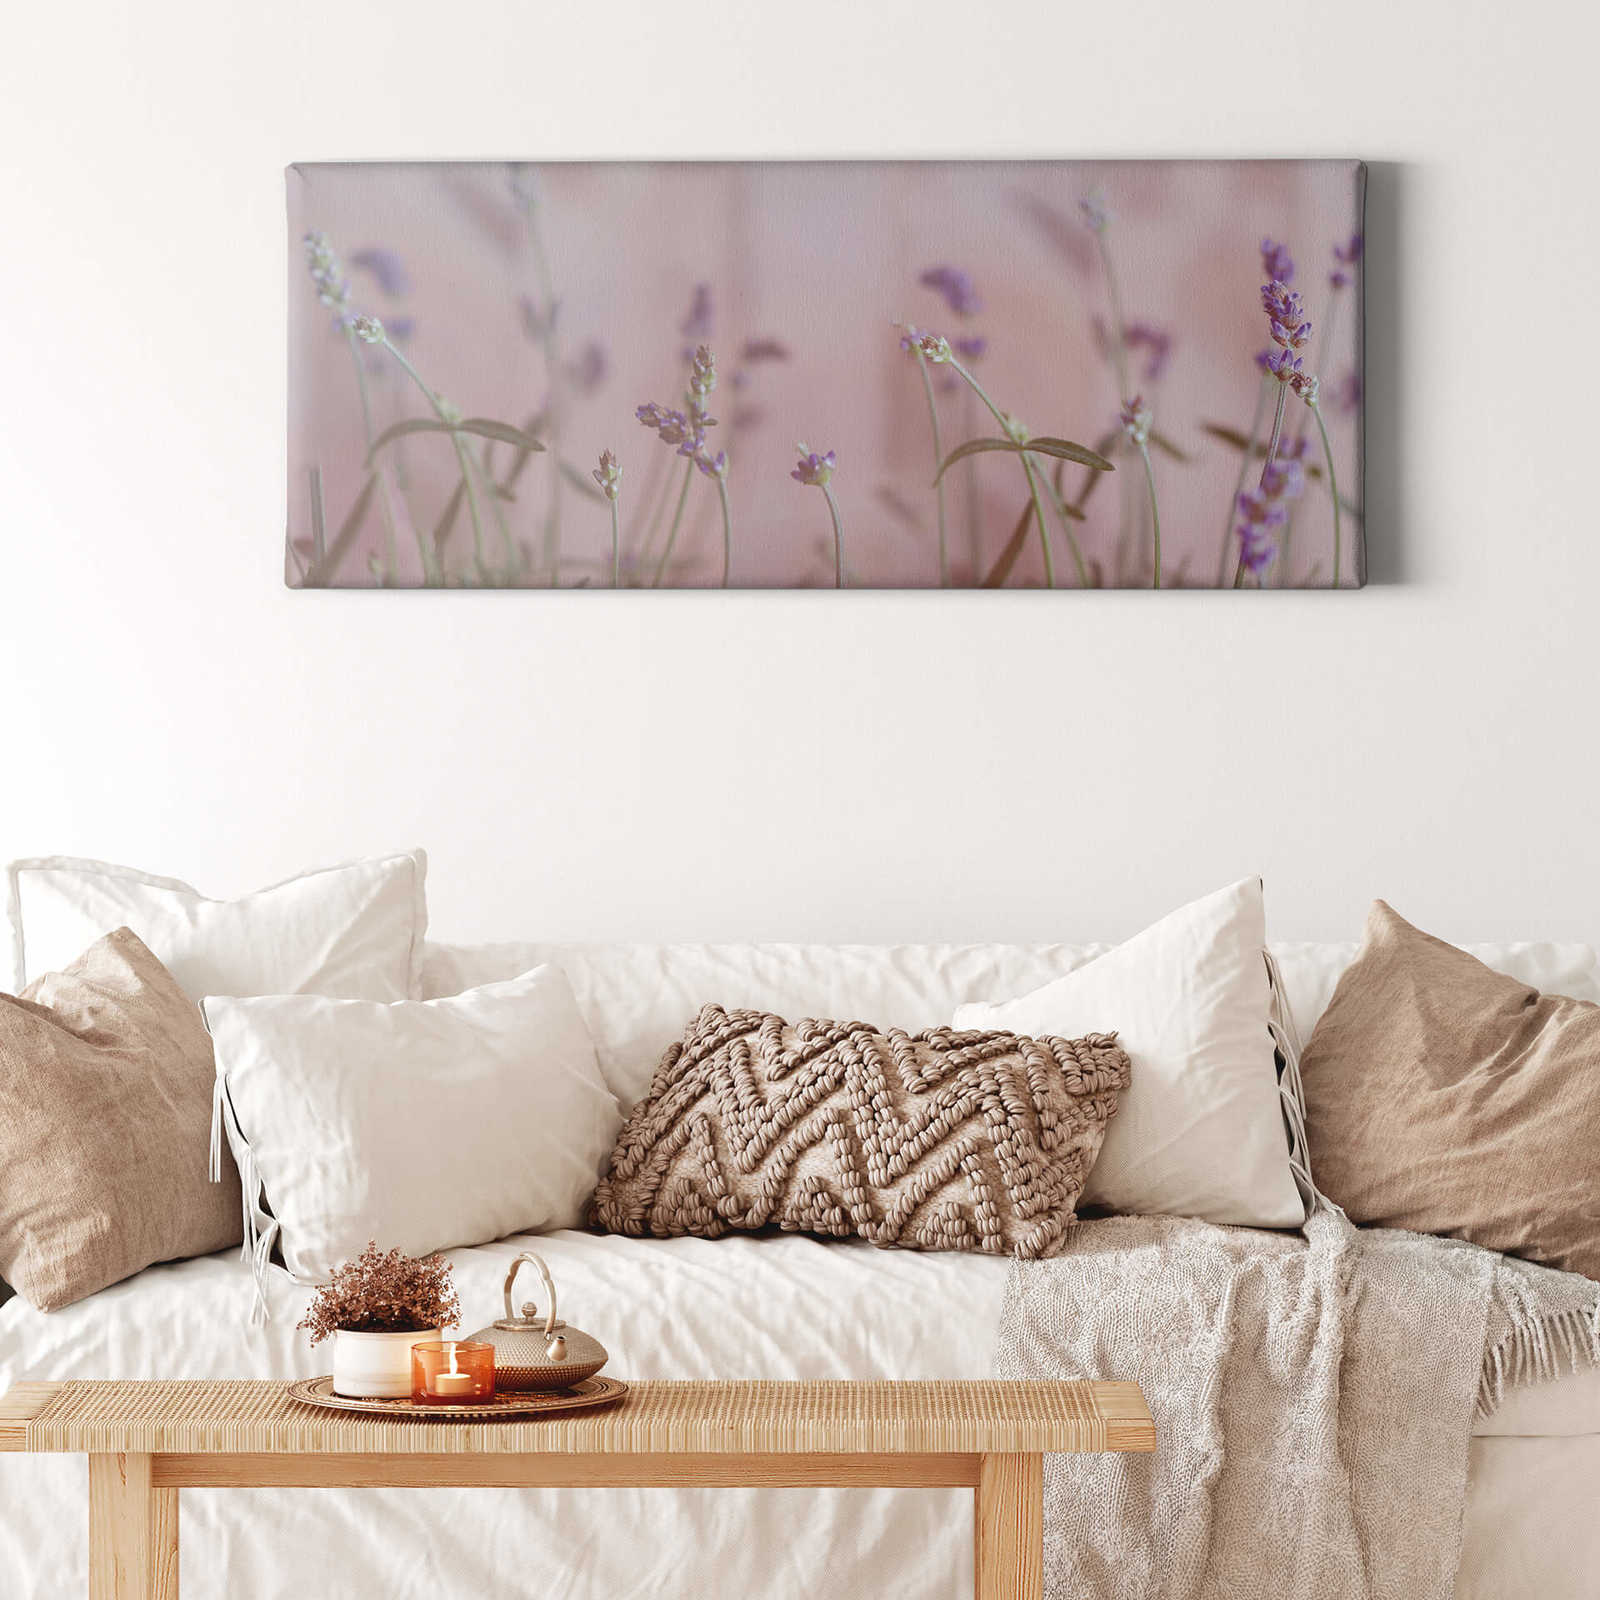             Foto panoramica di un prato fiorito con fiori di lavanda - 1,00 m x 0,40 m
        